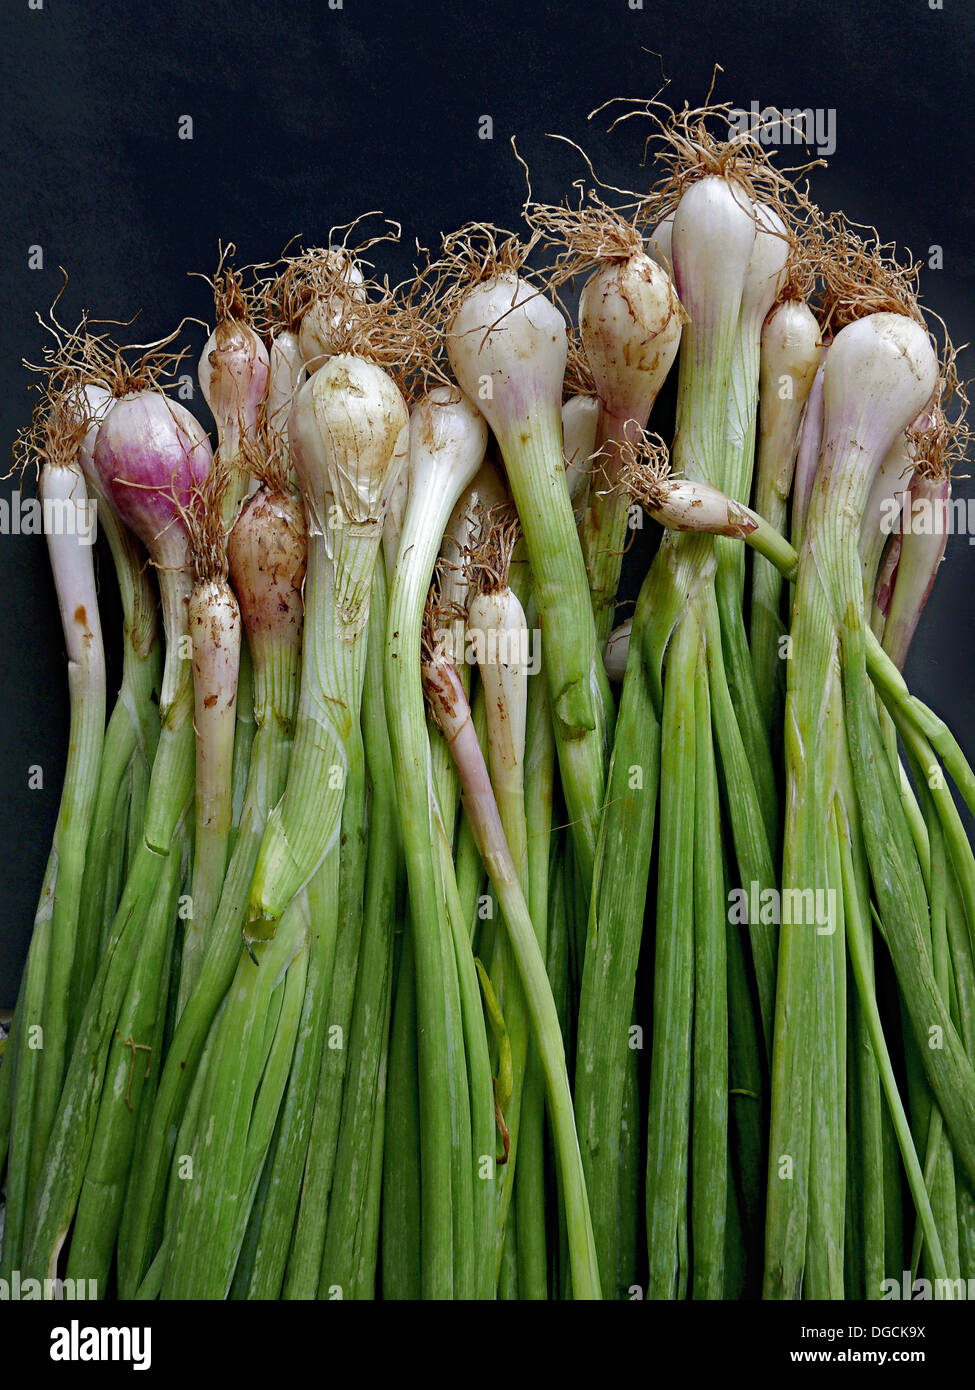 L'Oignon poireau. Huiles végétales courantes. Un oignon est l'ampoule de la hardy herbe bisannuelle Allium cepa. Pune, Maharashtra, Inde. Banque D'Images